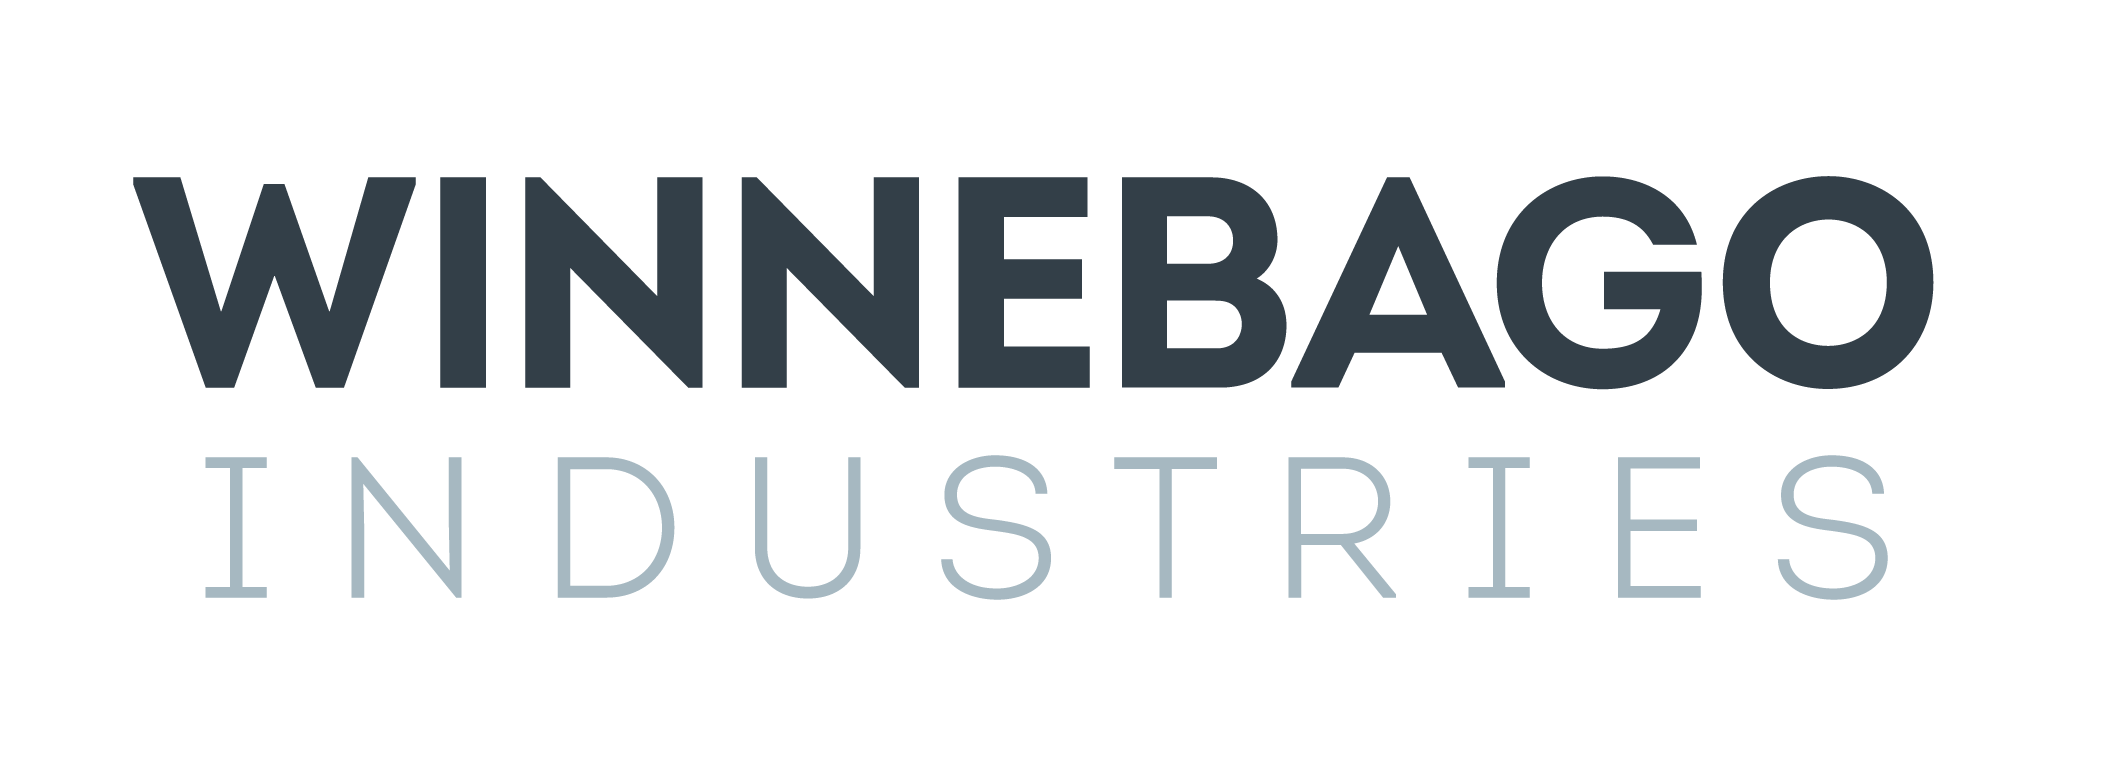 Winnebago_Industries_logo